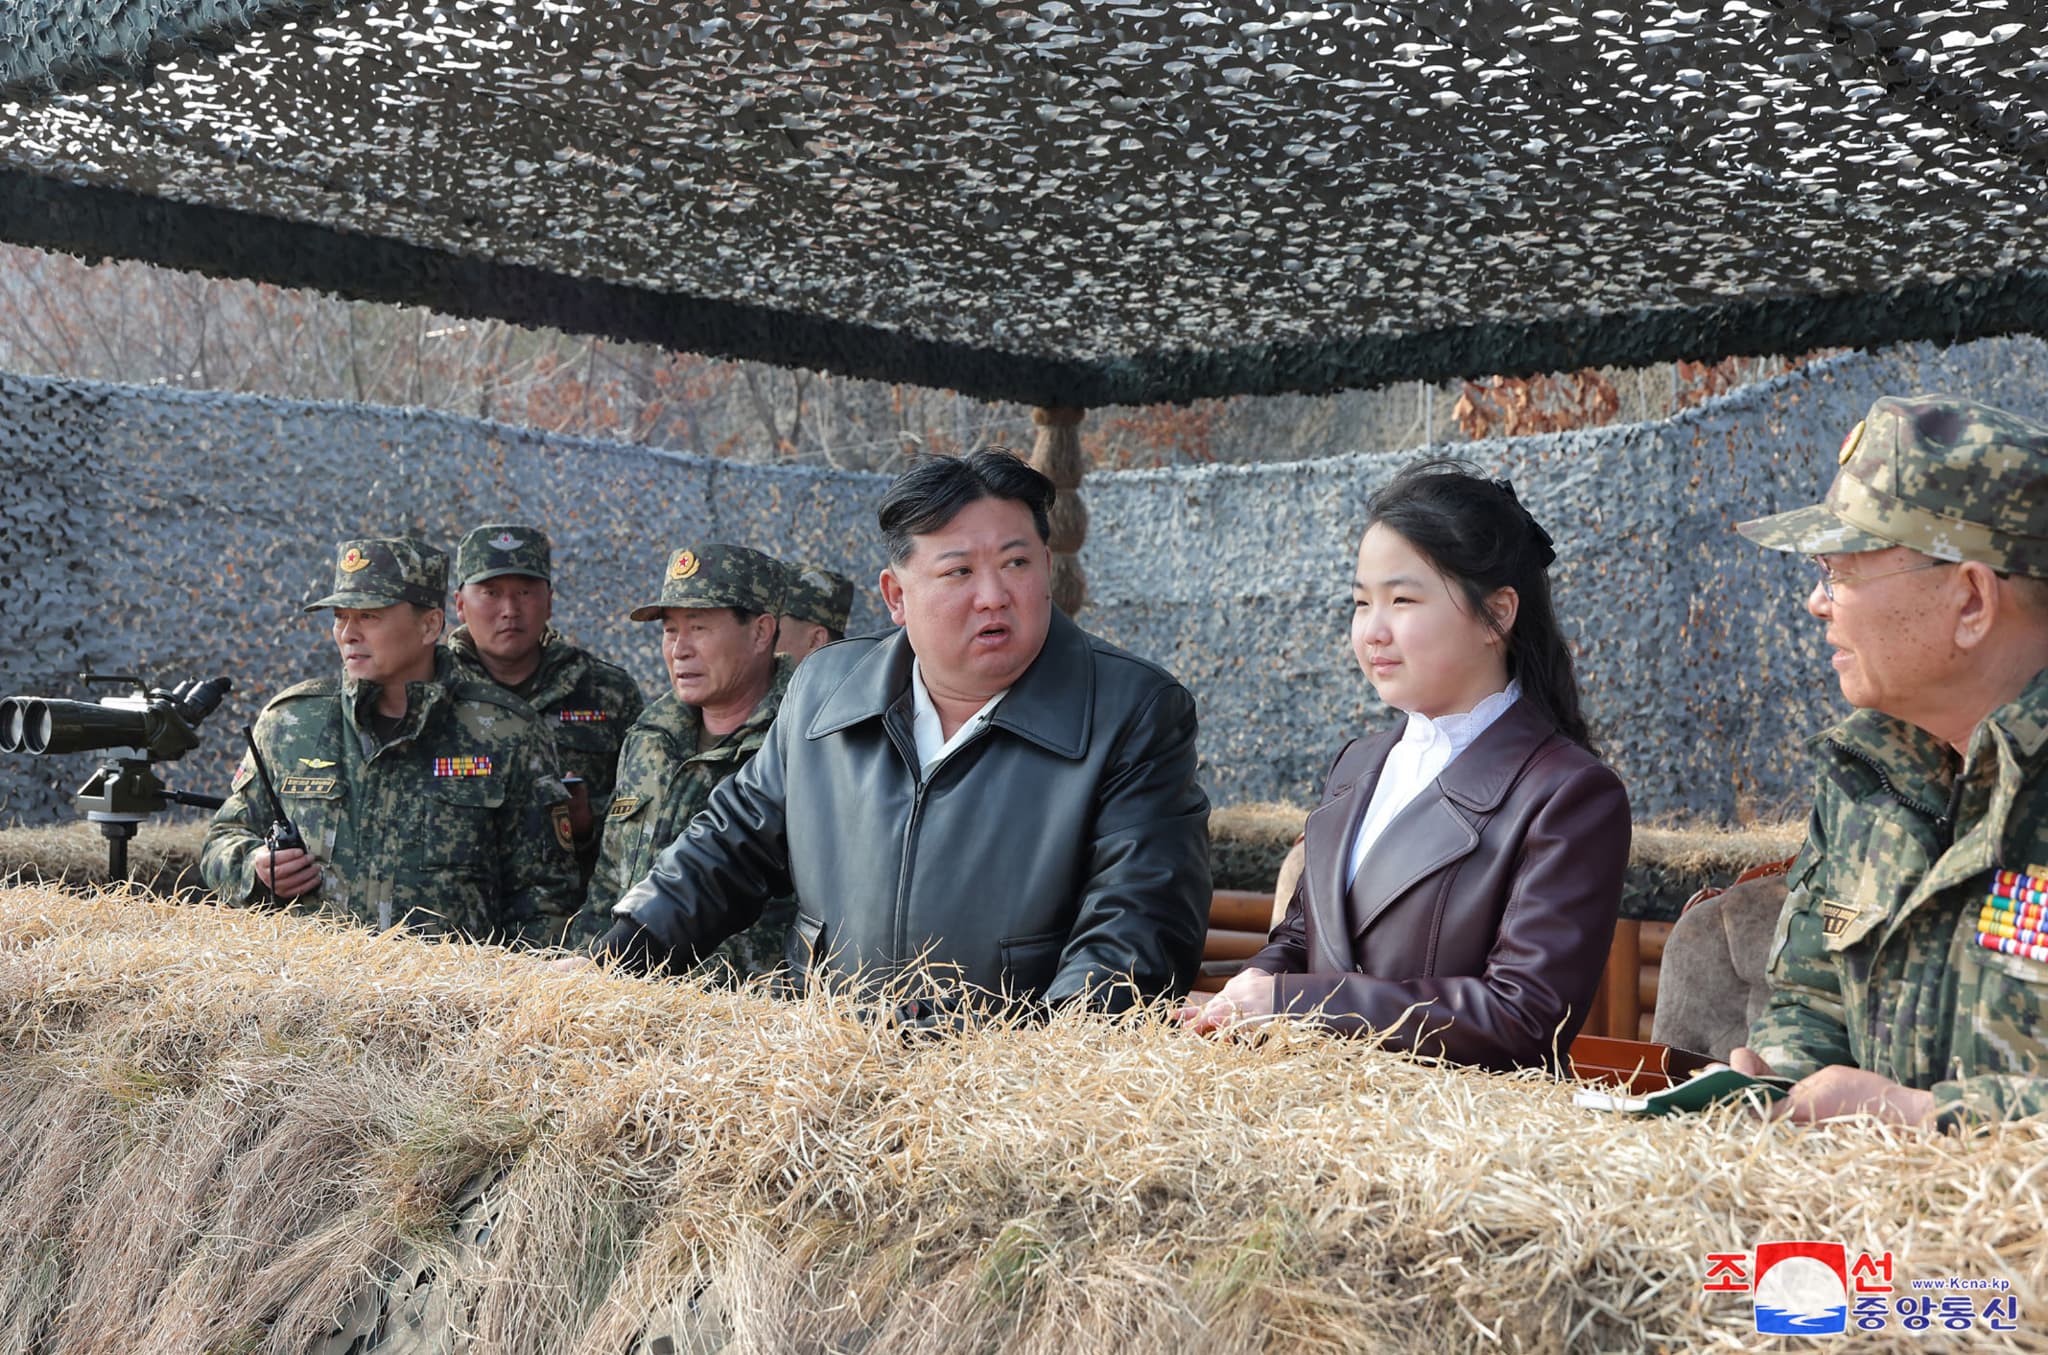 corée du nord: la fille du dictateur kim jong-un lui succèdera-t-elle?